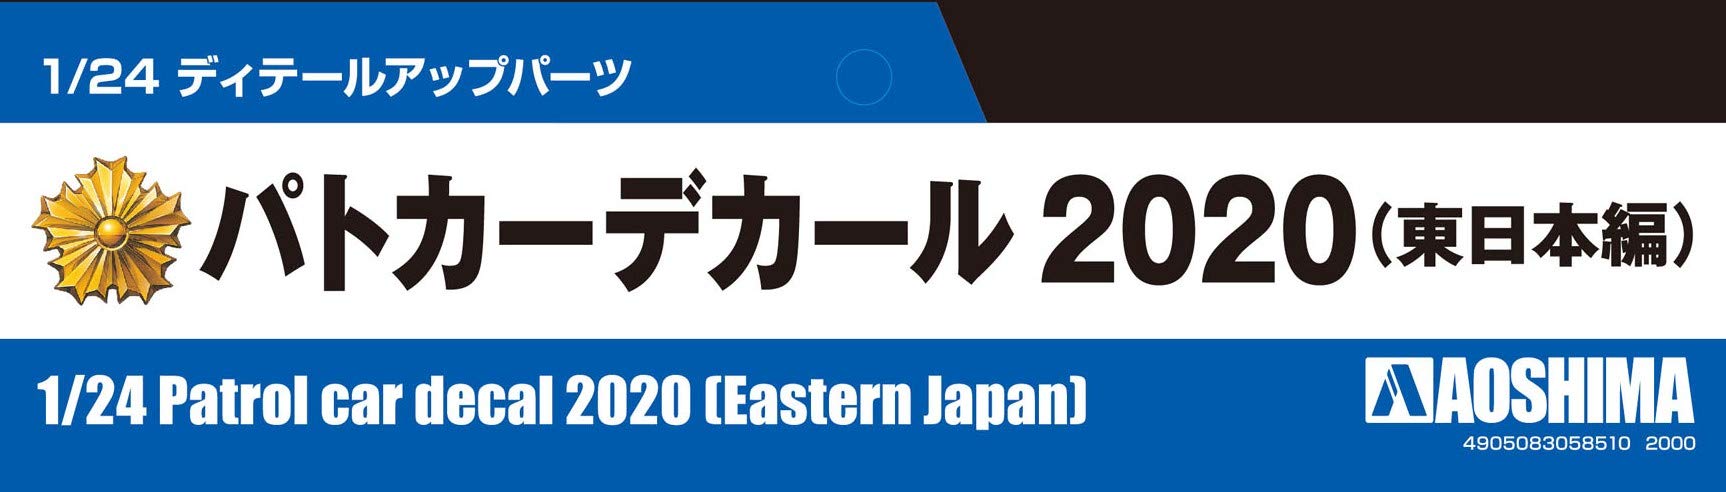 AOSHIMA 1/24 Detail Up Parts Patrol Car Decal 2020 East Japan